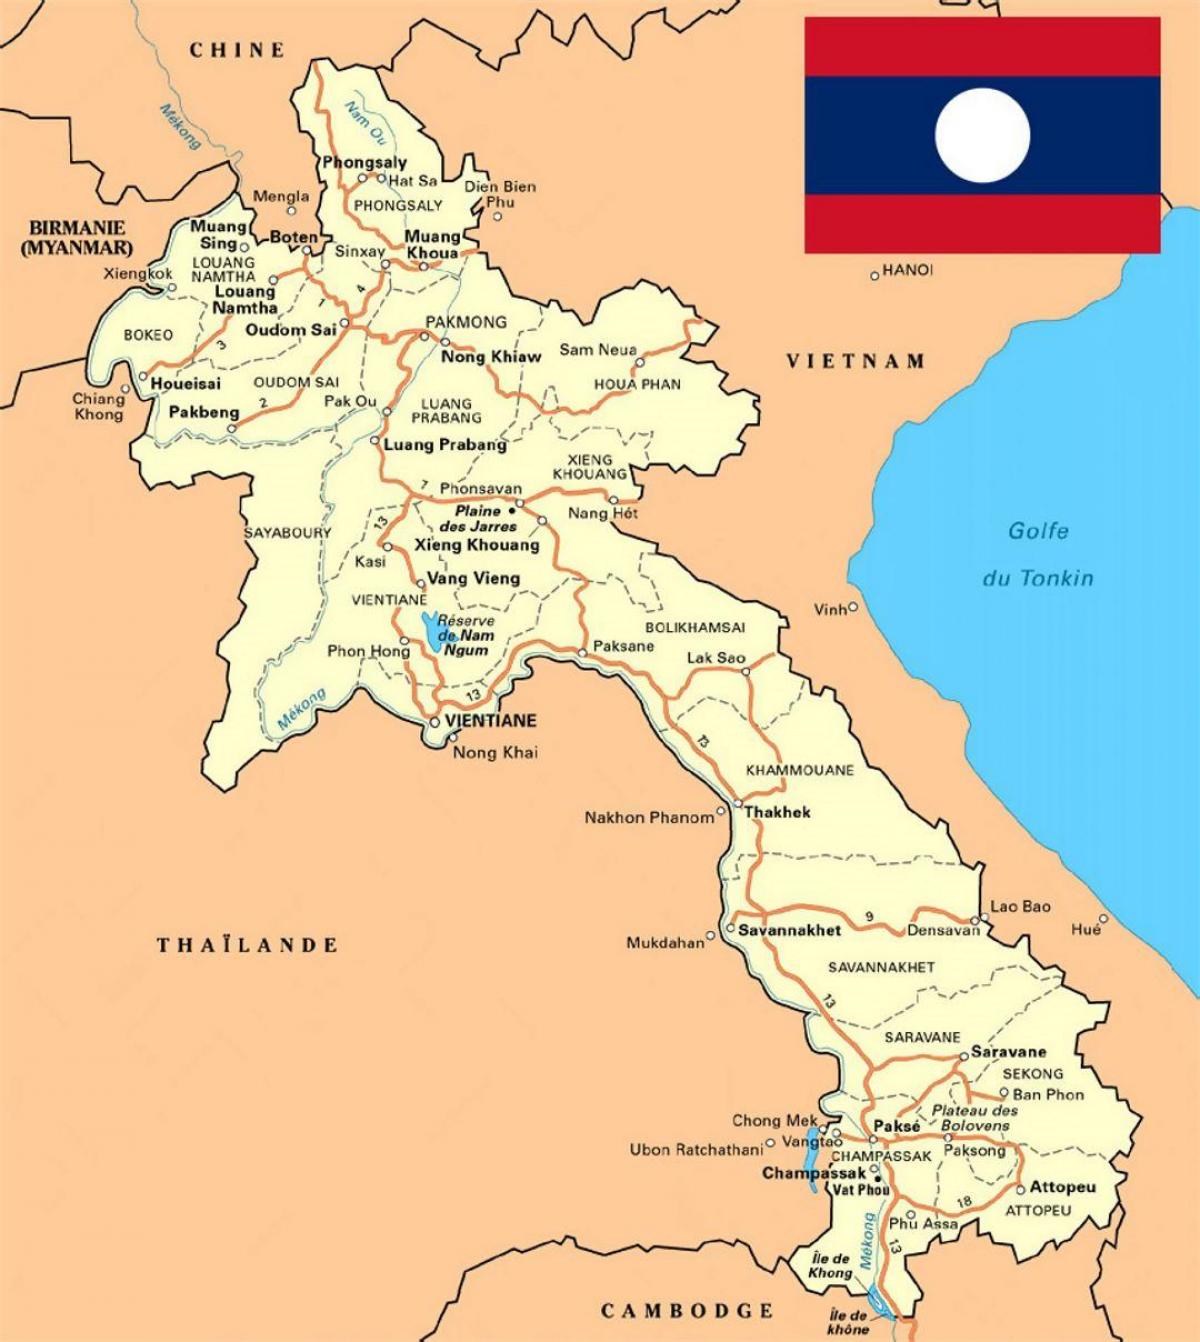 დეტალური რუკა ლაოსი